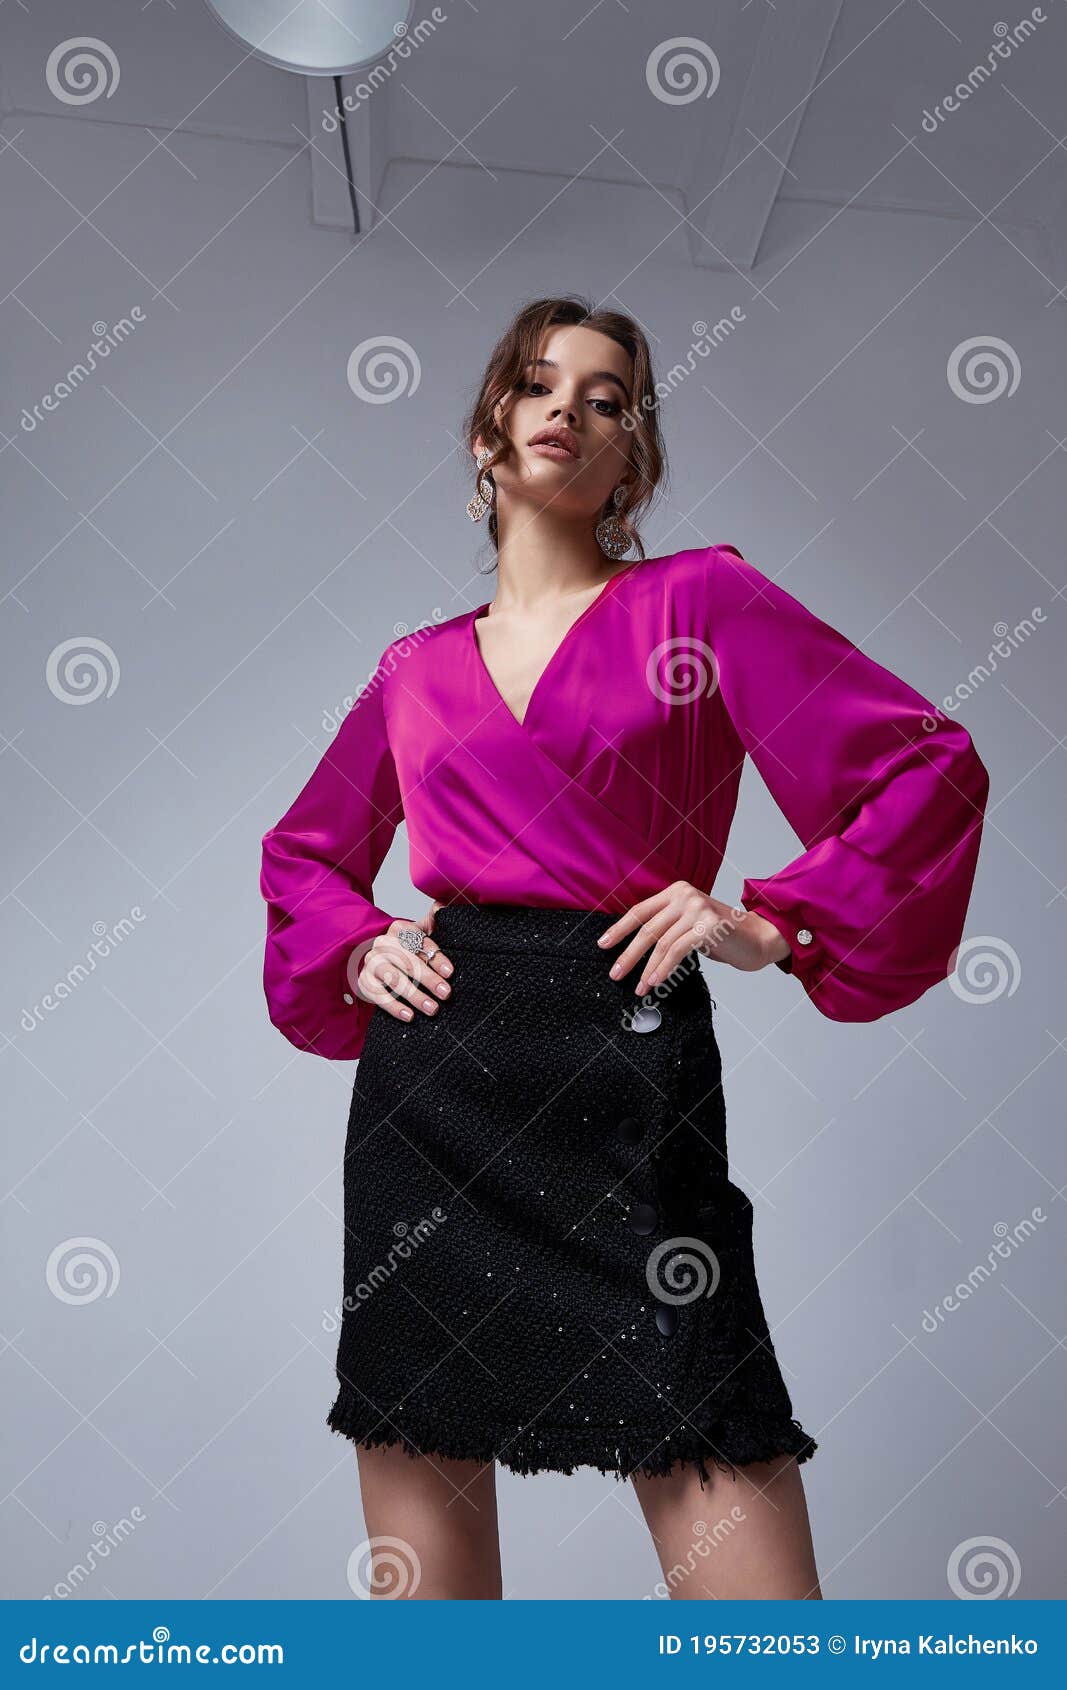 Bella Mujer Estilo De Colección Fiesta De Moda Ropa Blusa Falda Correa De Lujo Casual Para Cada Modelo De Accesorio Diario Imagen de - Imagen de danza, elegante: